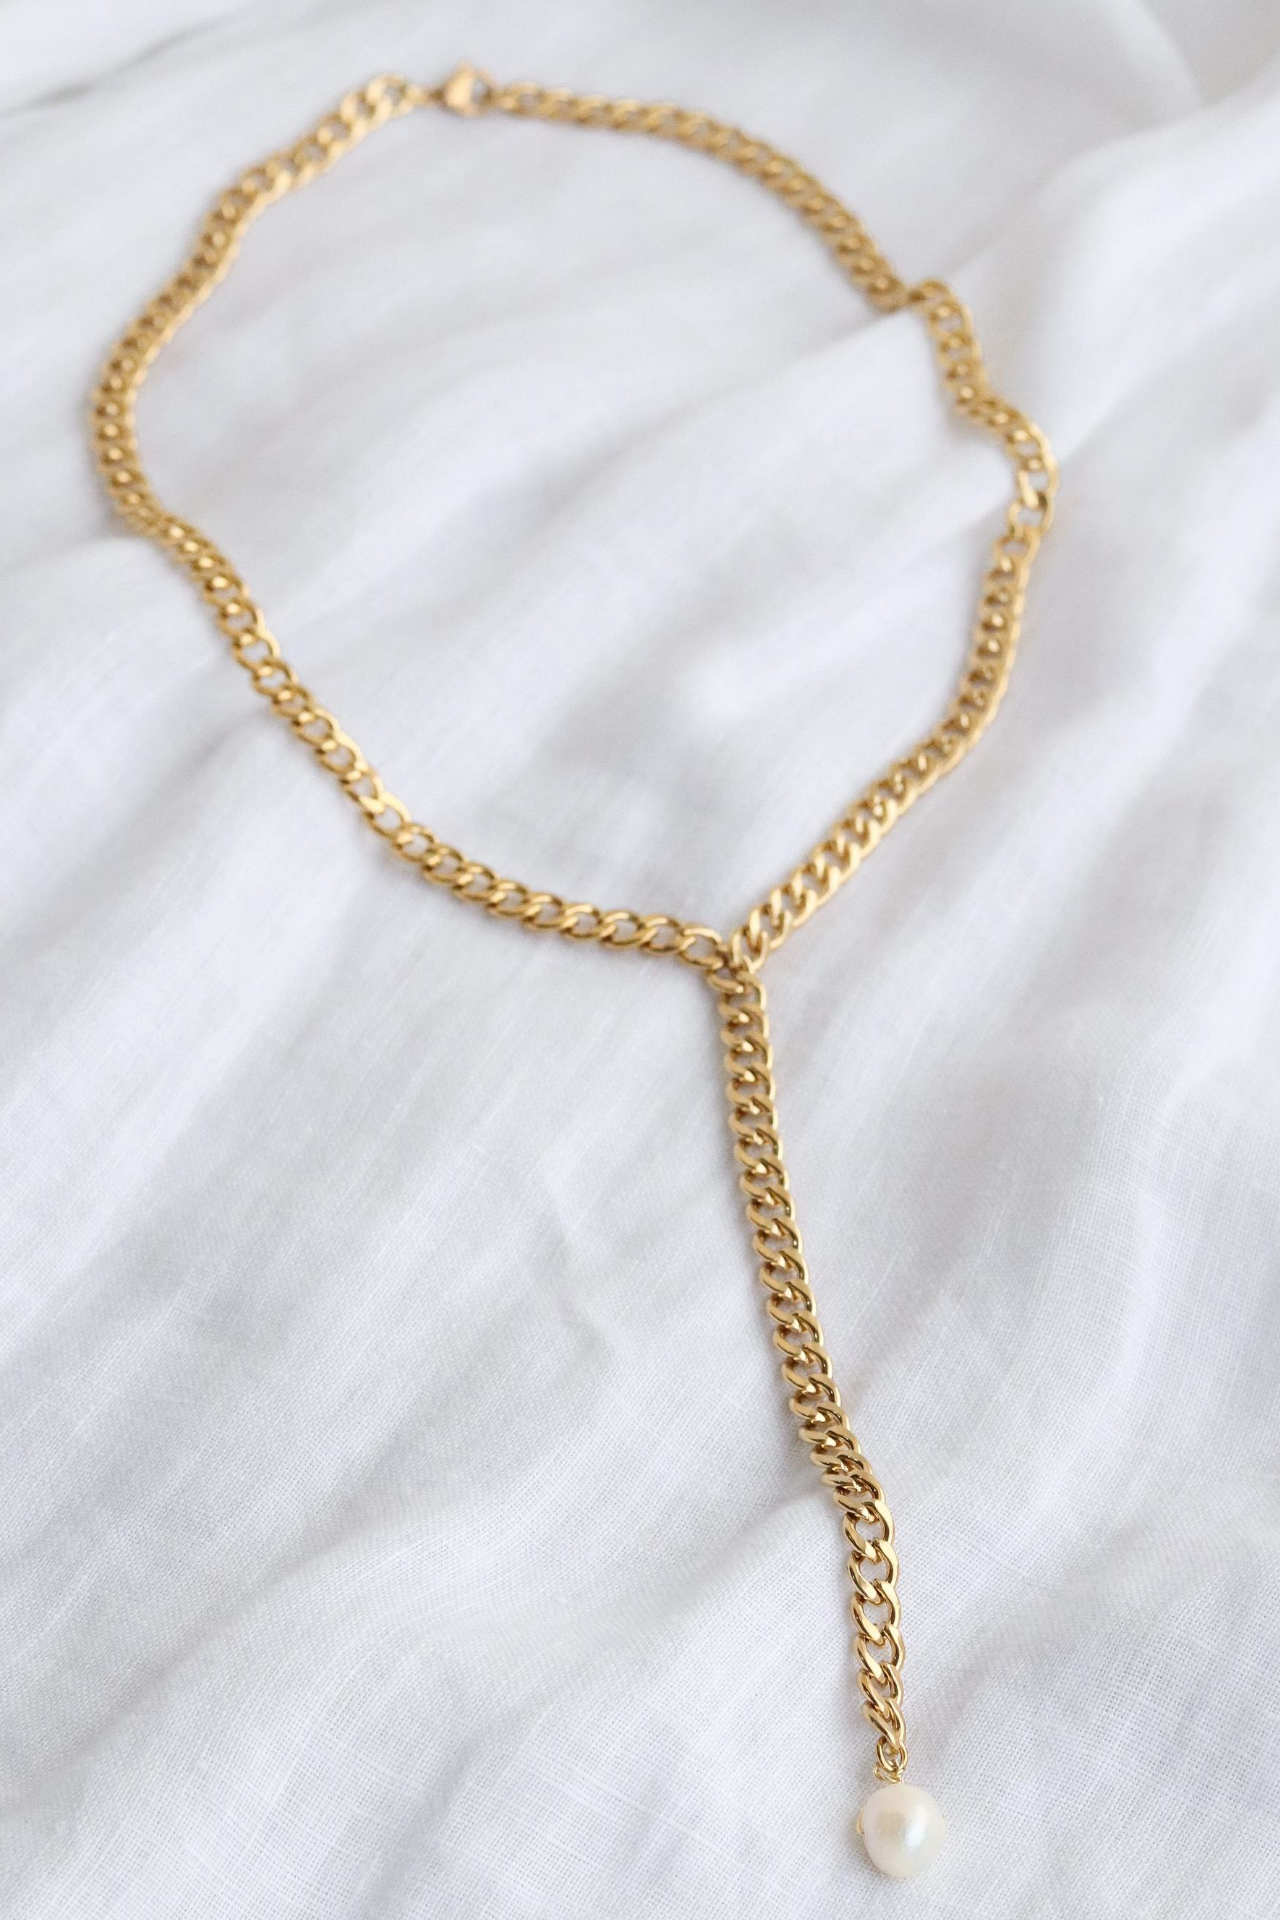 Acero.

Largo cadena interna (bordea el cuello): 42 cm

Largo cadena externa (caída): 11 cm 

Grosor de la cadena: 0.5 mm
